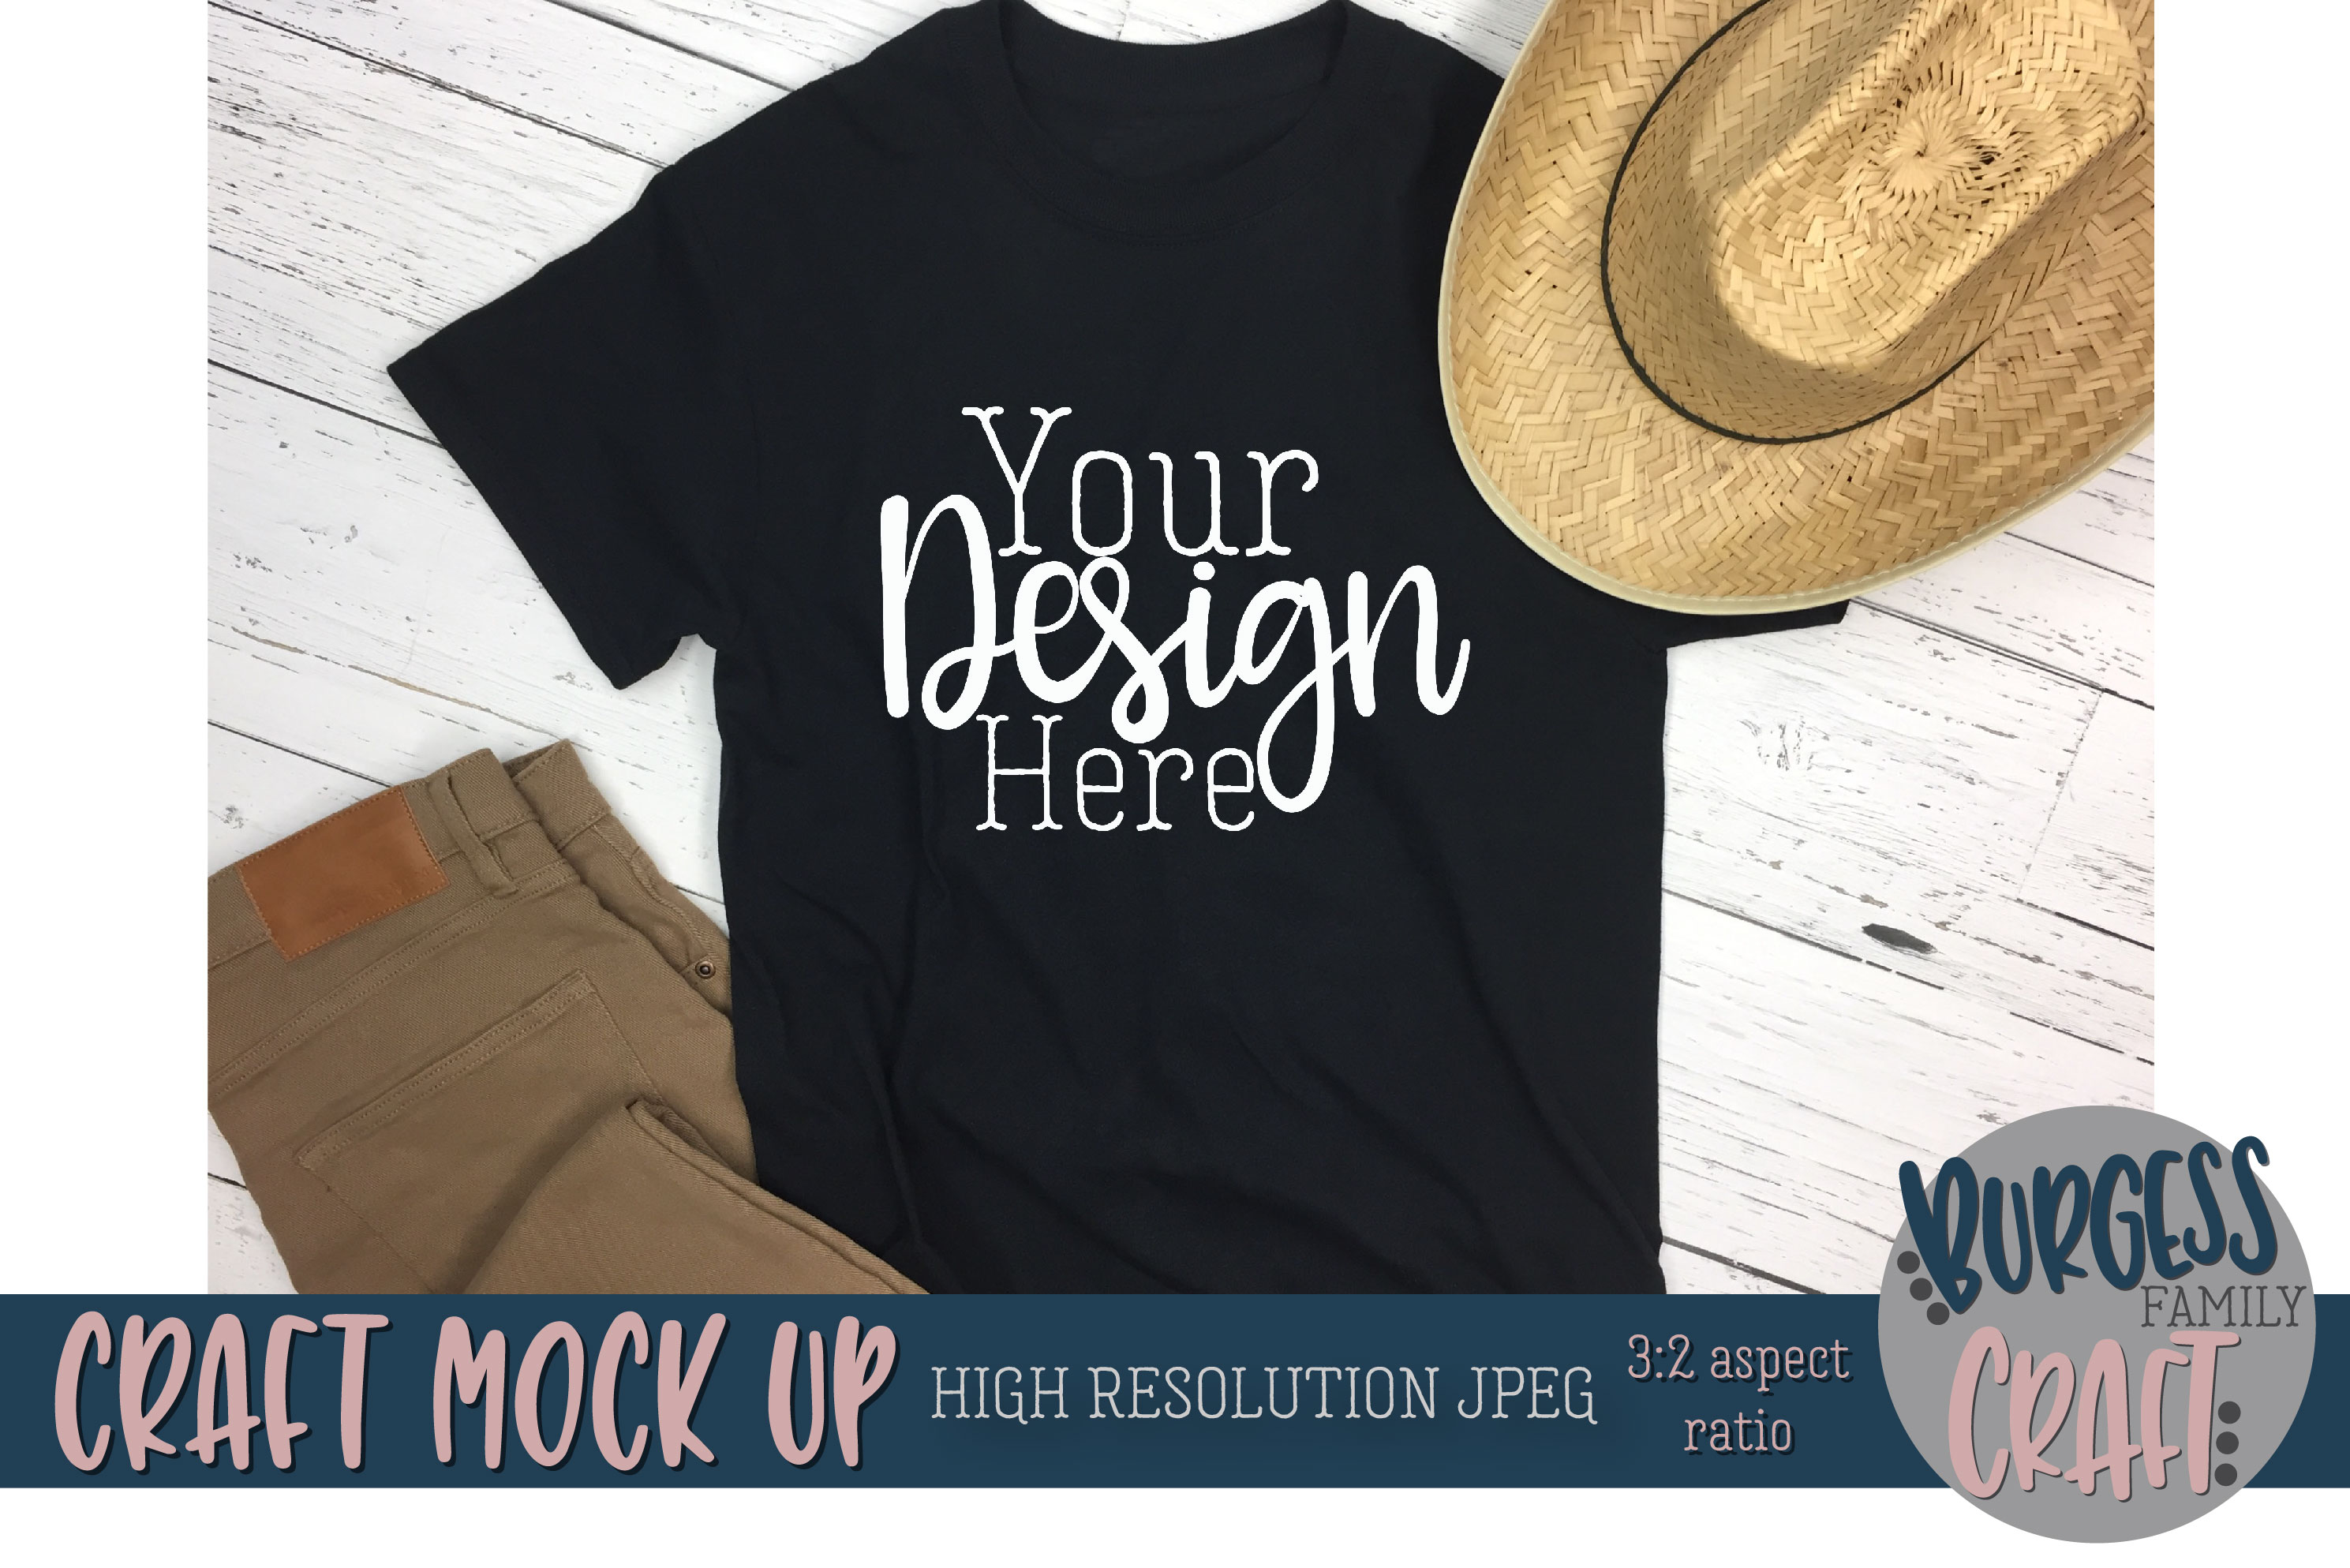 Download Men's black t-shirt straw hat Craft mock up |High ...